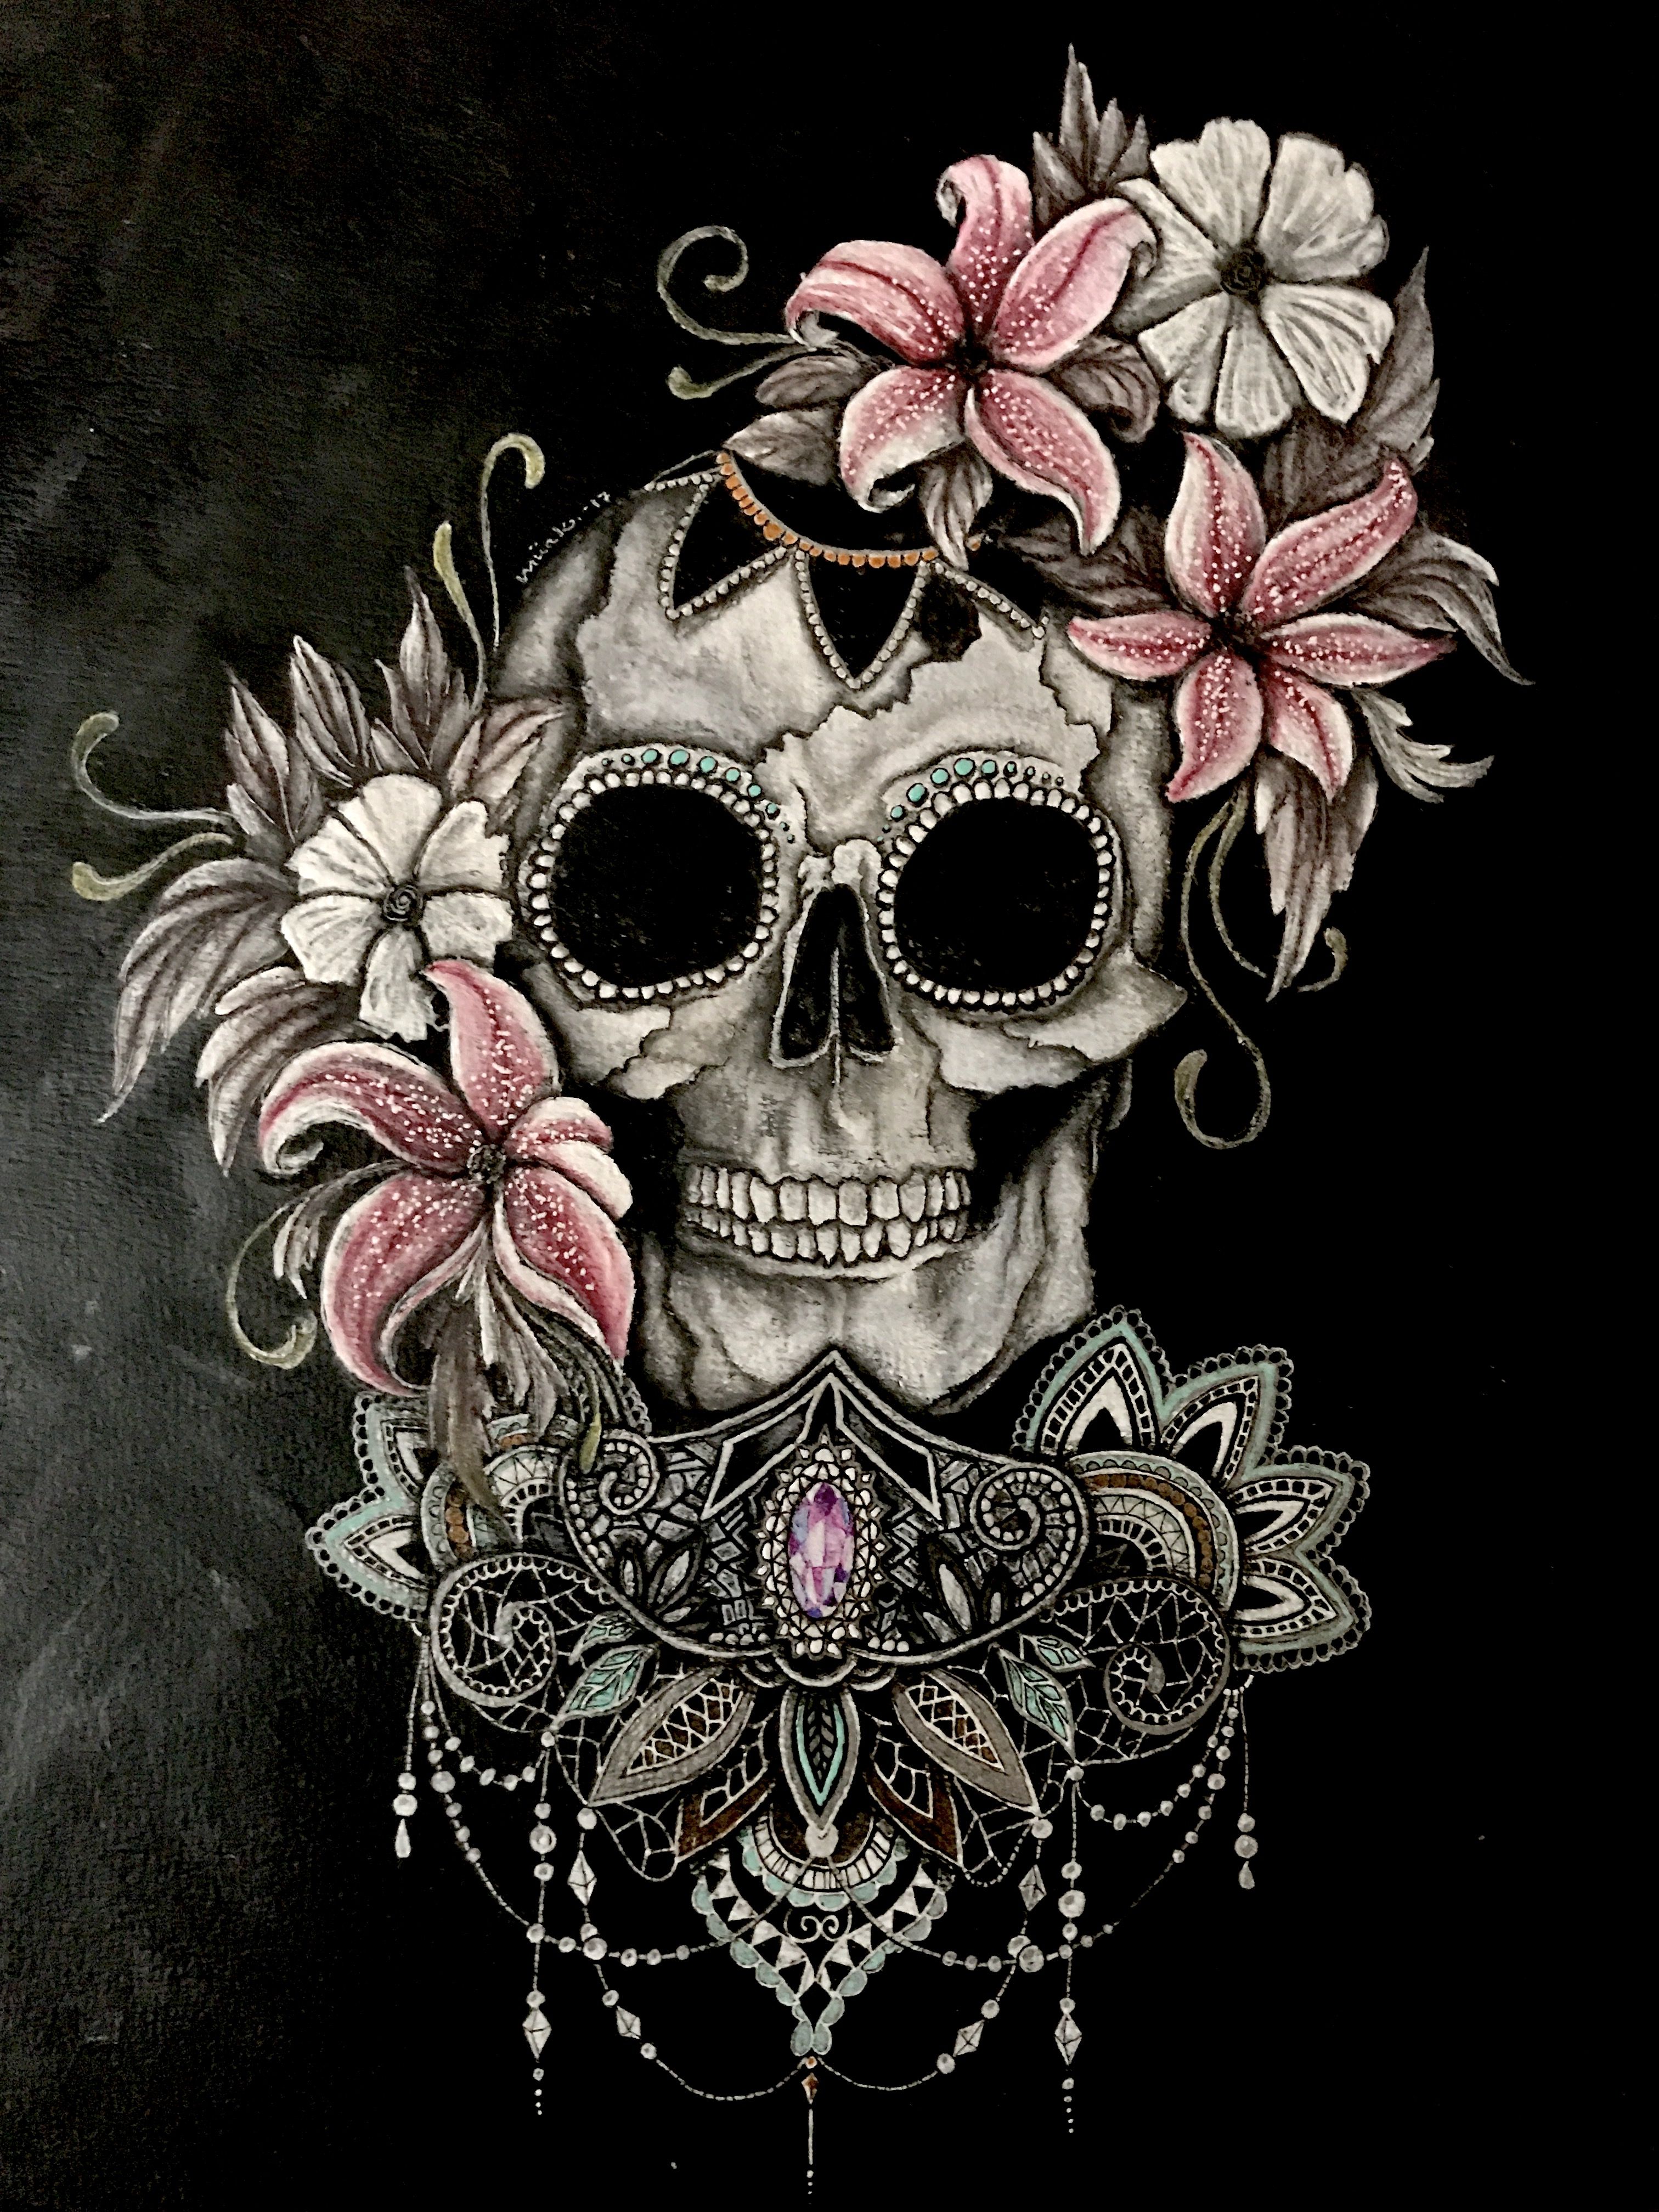 Pastel Colors Sugar Skulls Wallpaper by AleyHandRough on DeviantArt